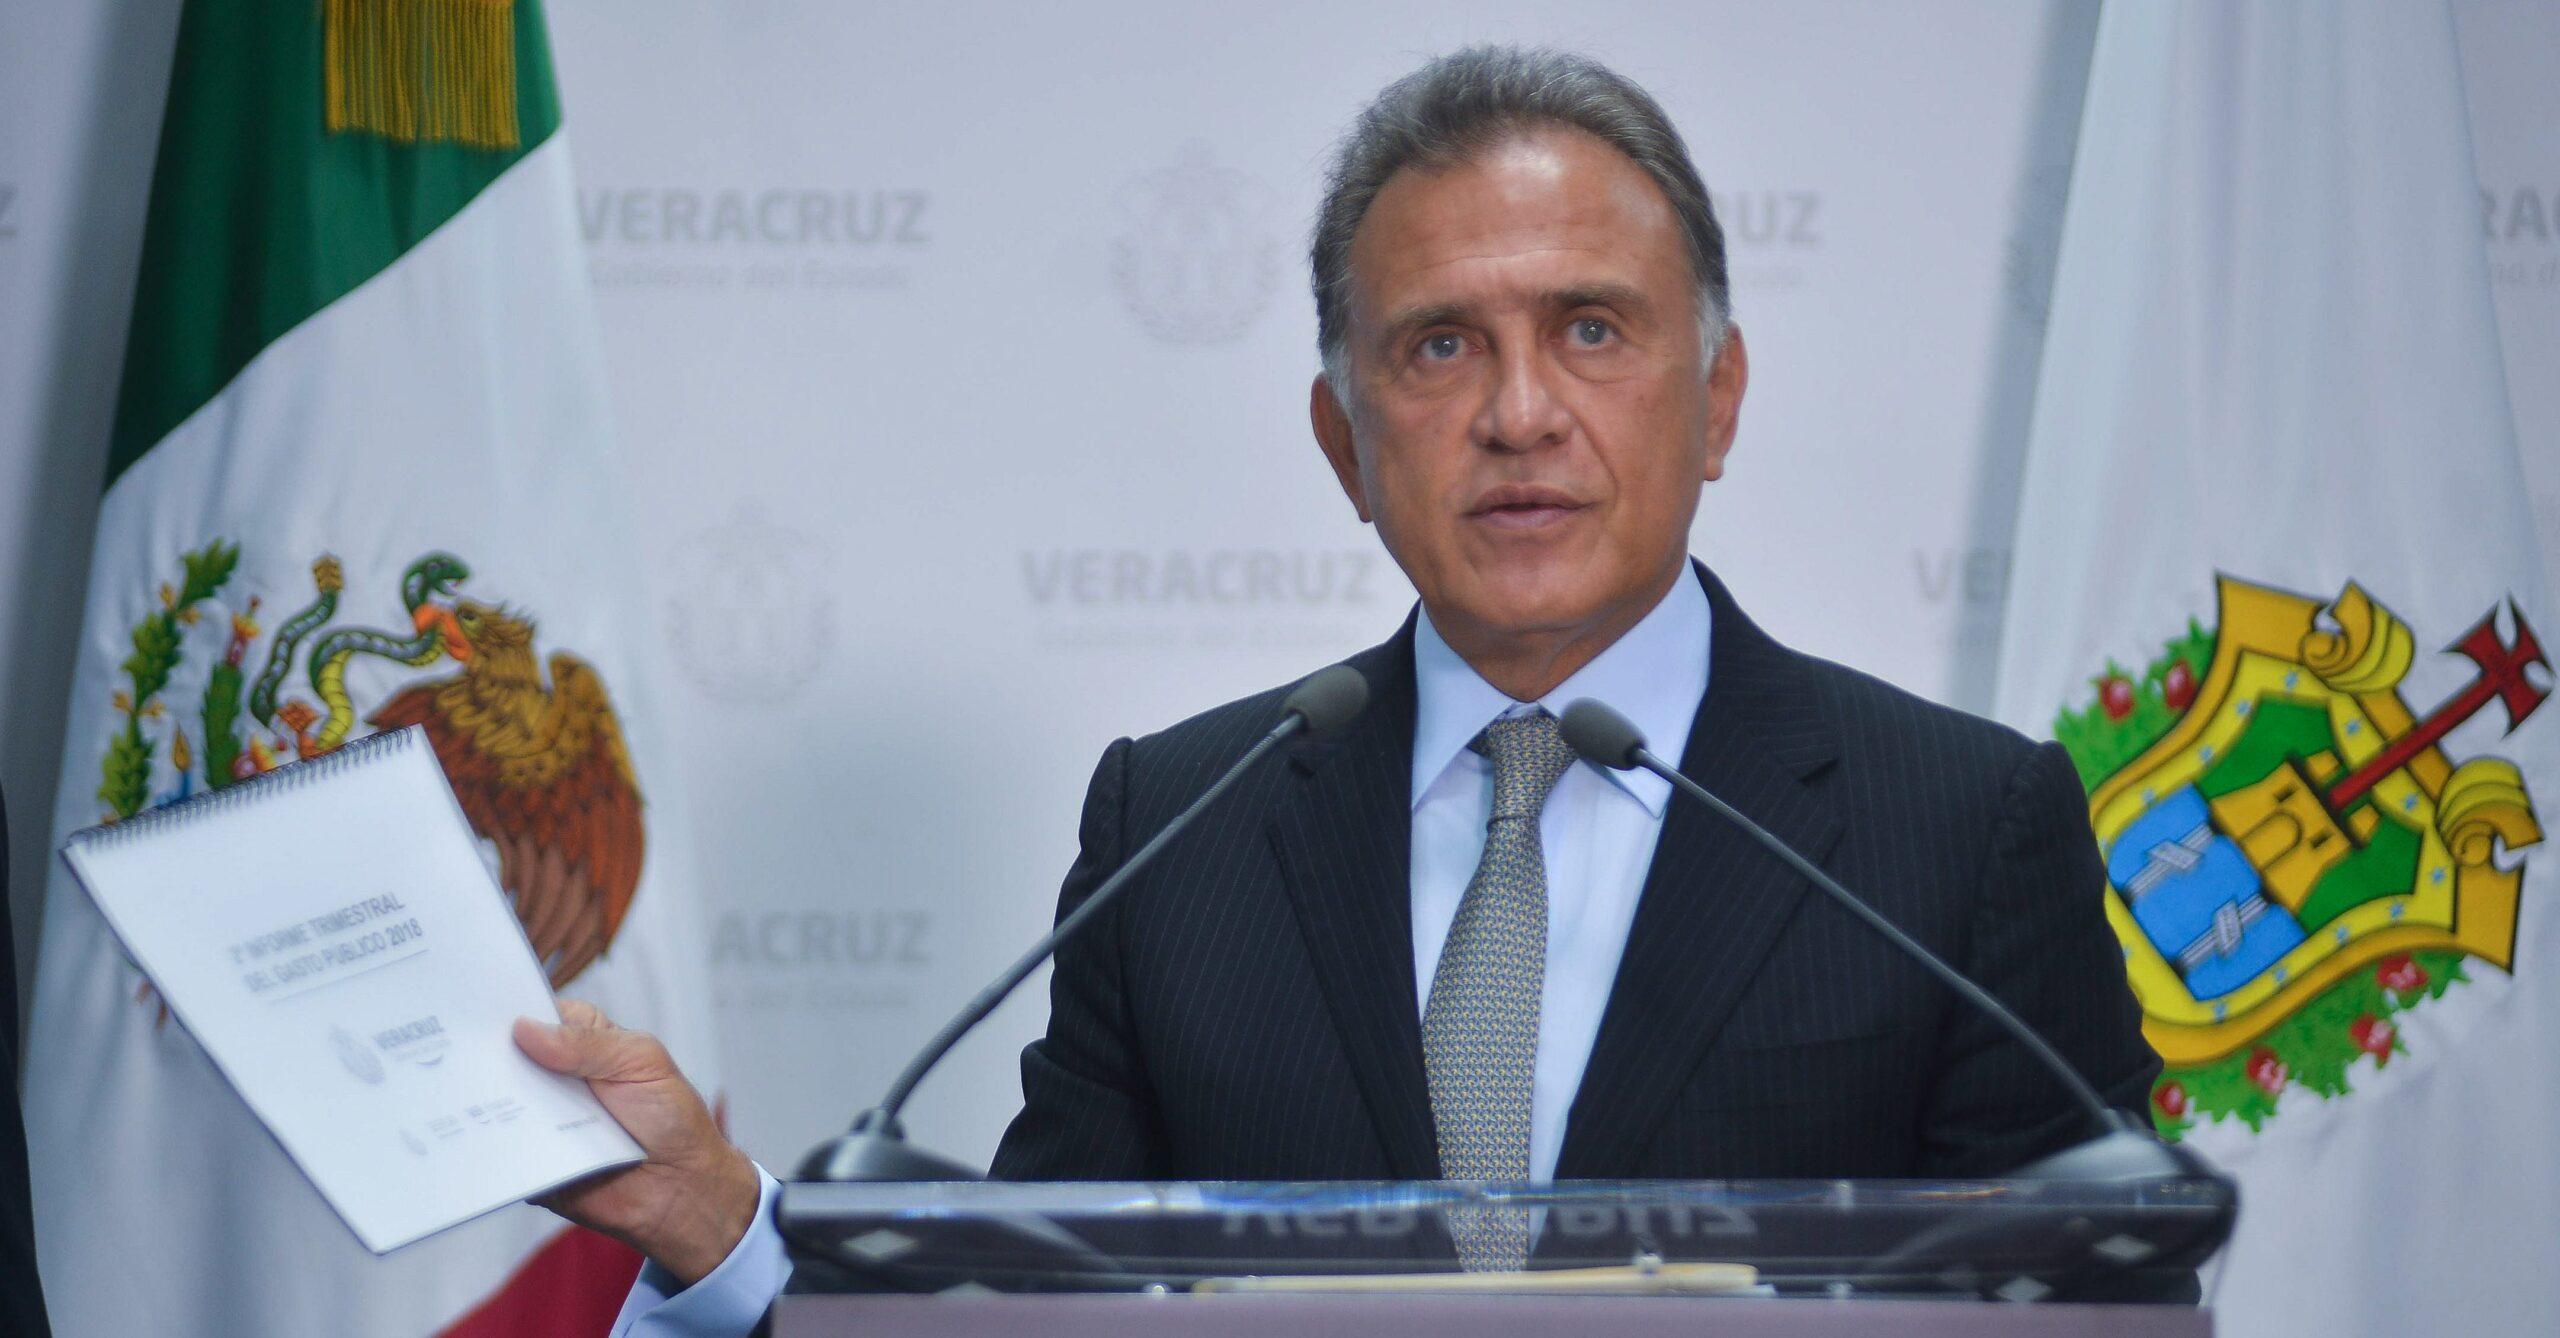 Sentencia a Duarte indigna, se perdonó a un delincuente, dice gobierno de Veracruz